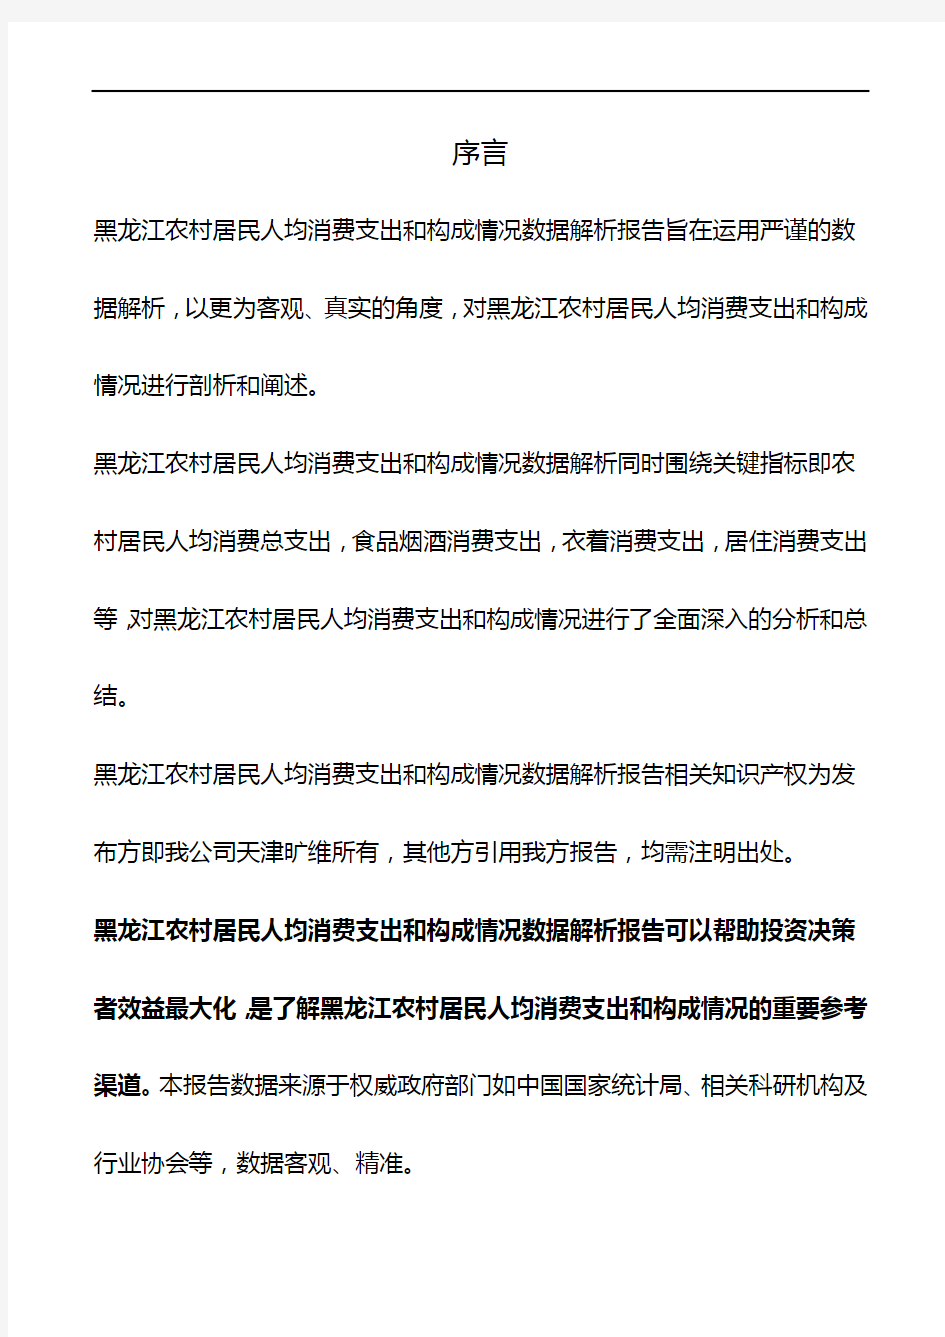 黑龙江农村居民人均消费支出和构成情况数据解析报告2018版